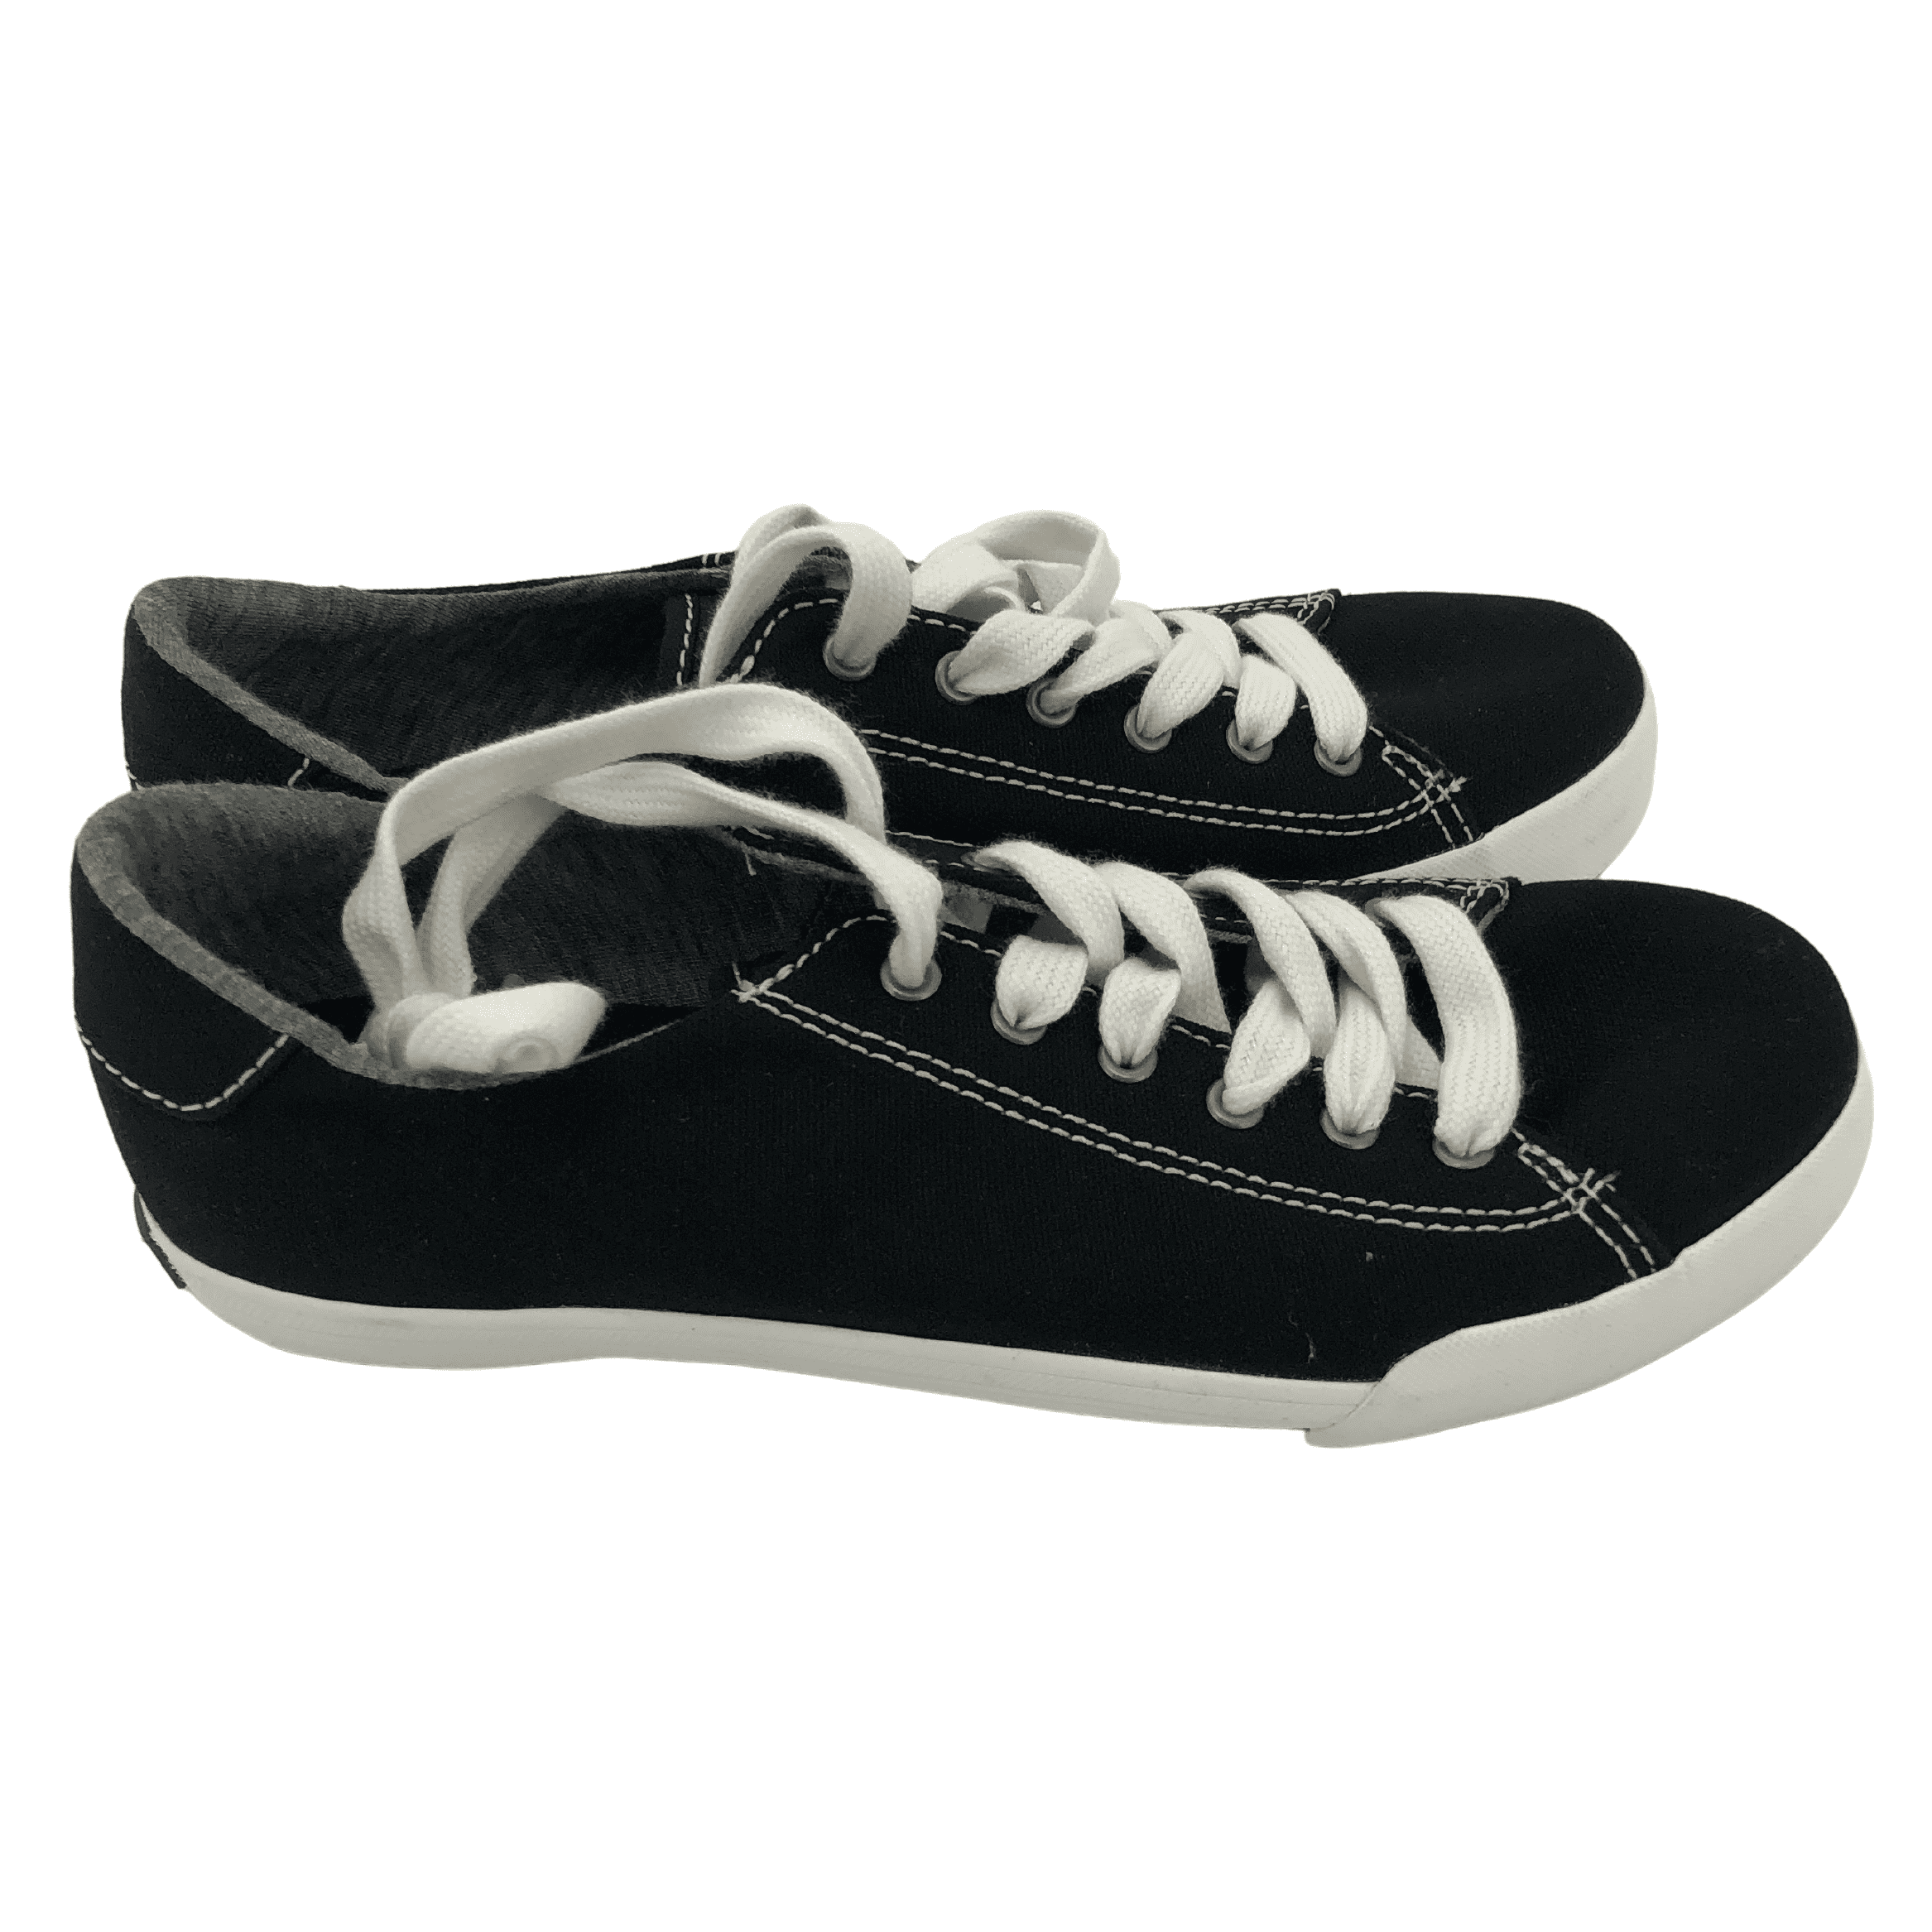 Keds Ladies Canvas Shoes / Dream Foam Insole / Size: 5 / Black